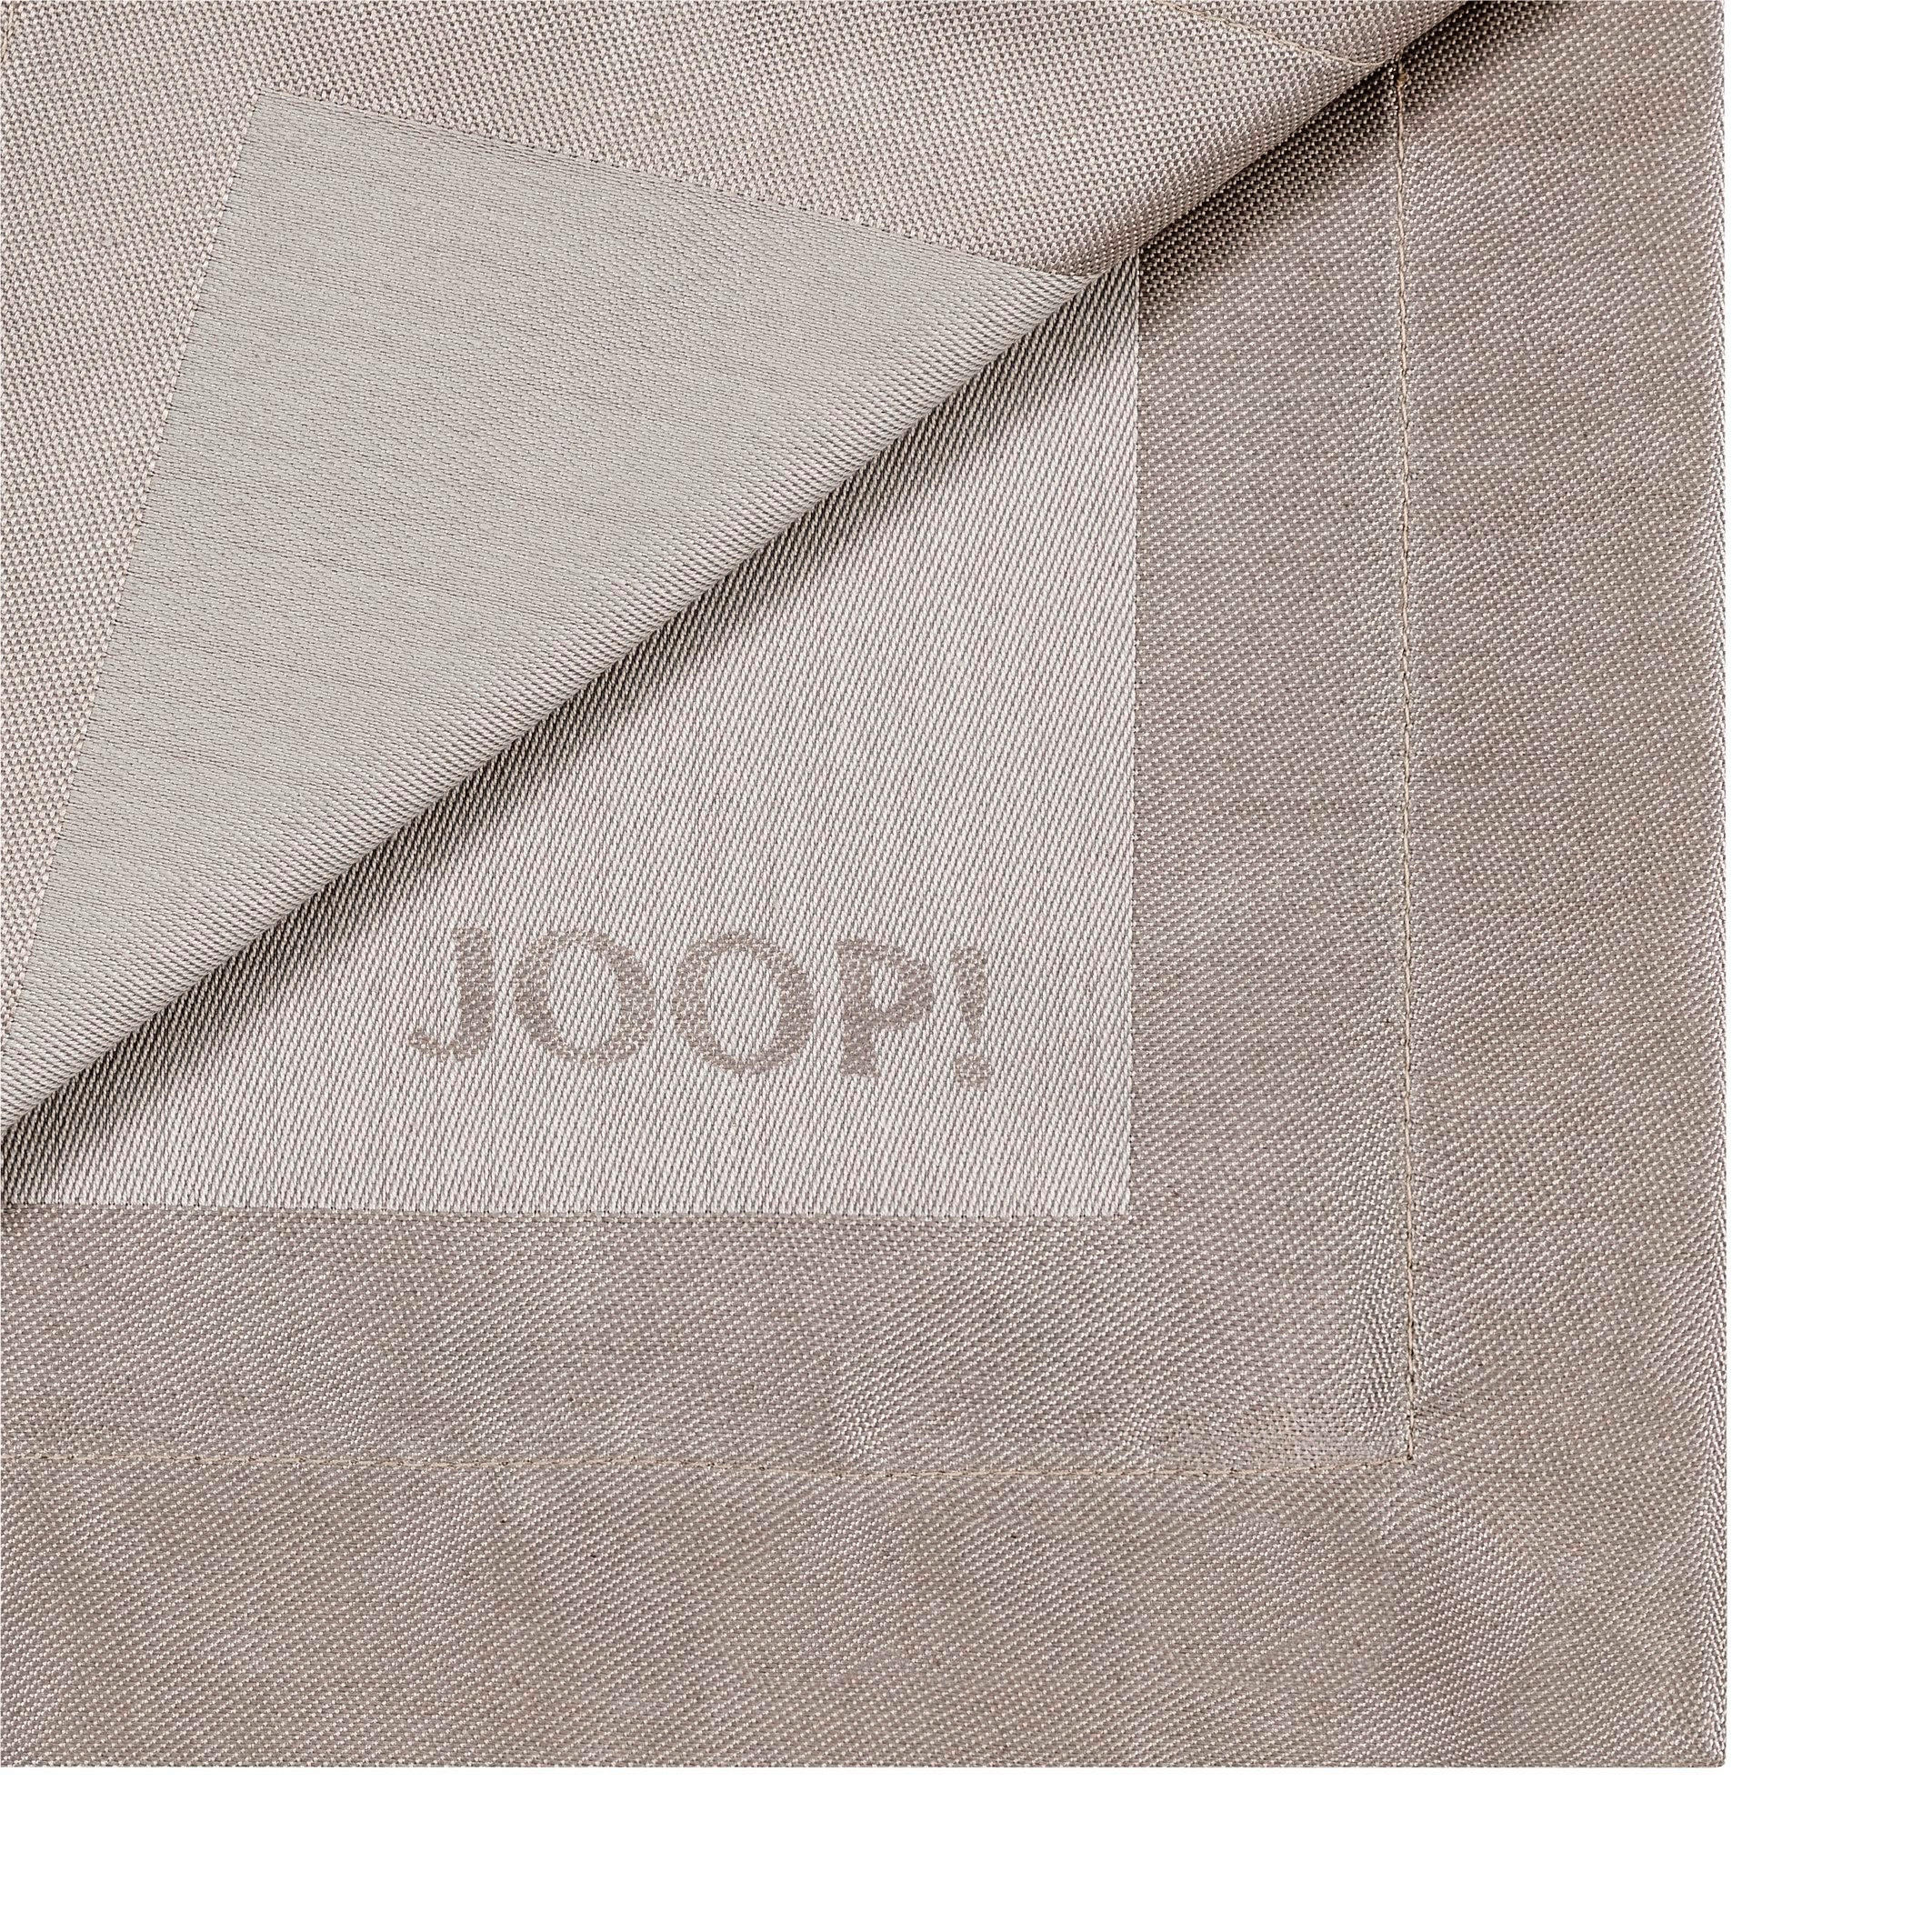 SERVIETTE 2ER-SET 50/50 cm   - Sandfarben, Design, Textil (50/50cm) - Joop!